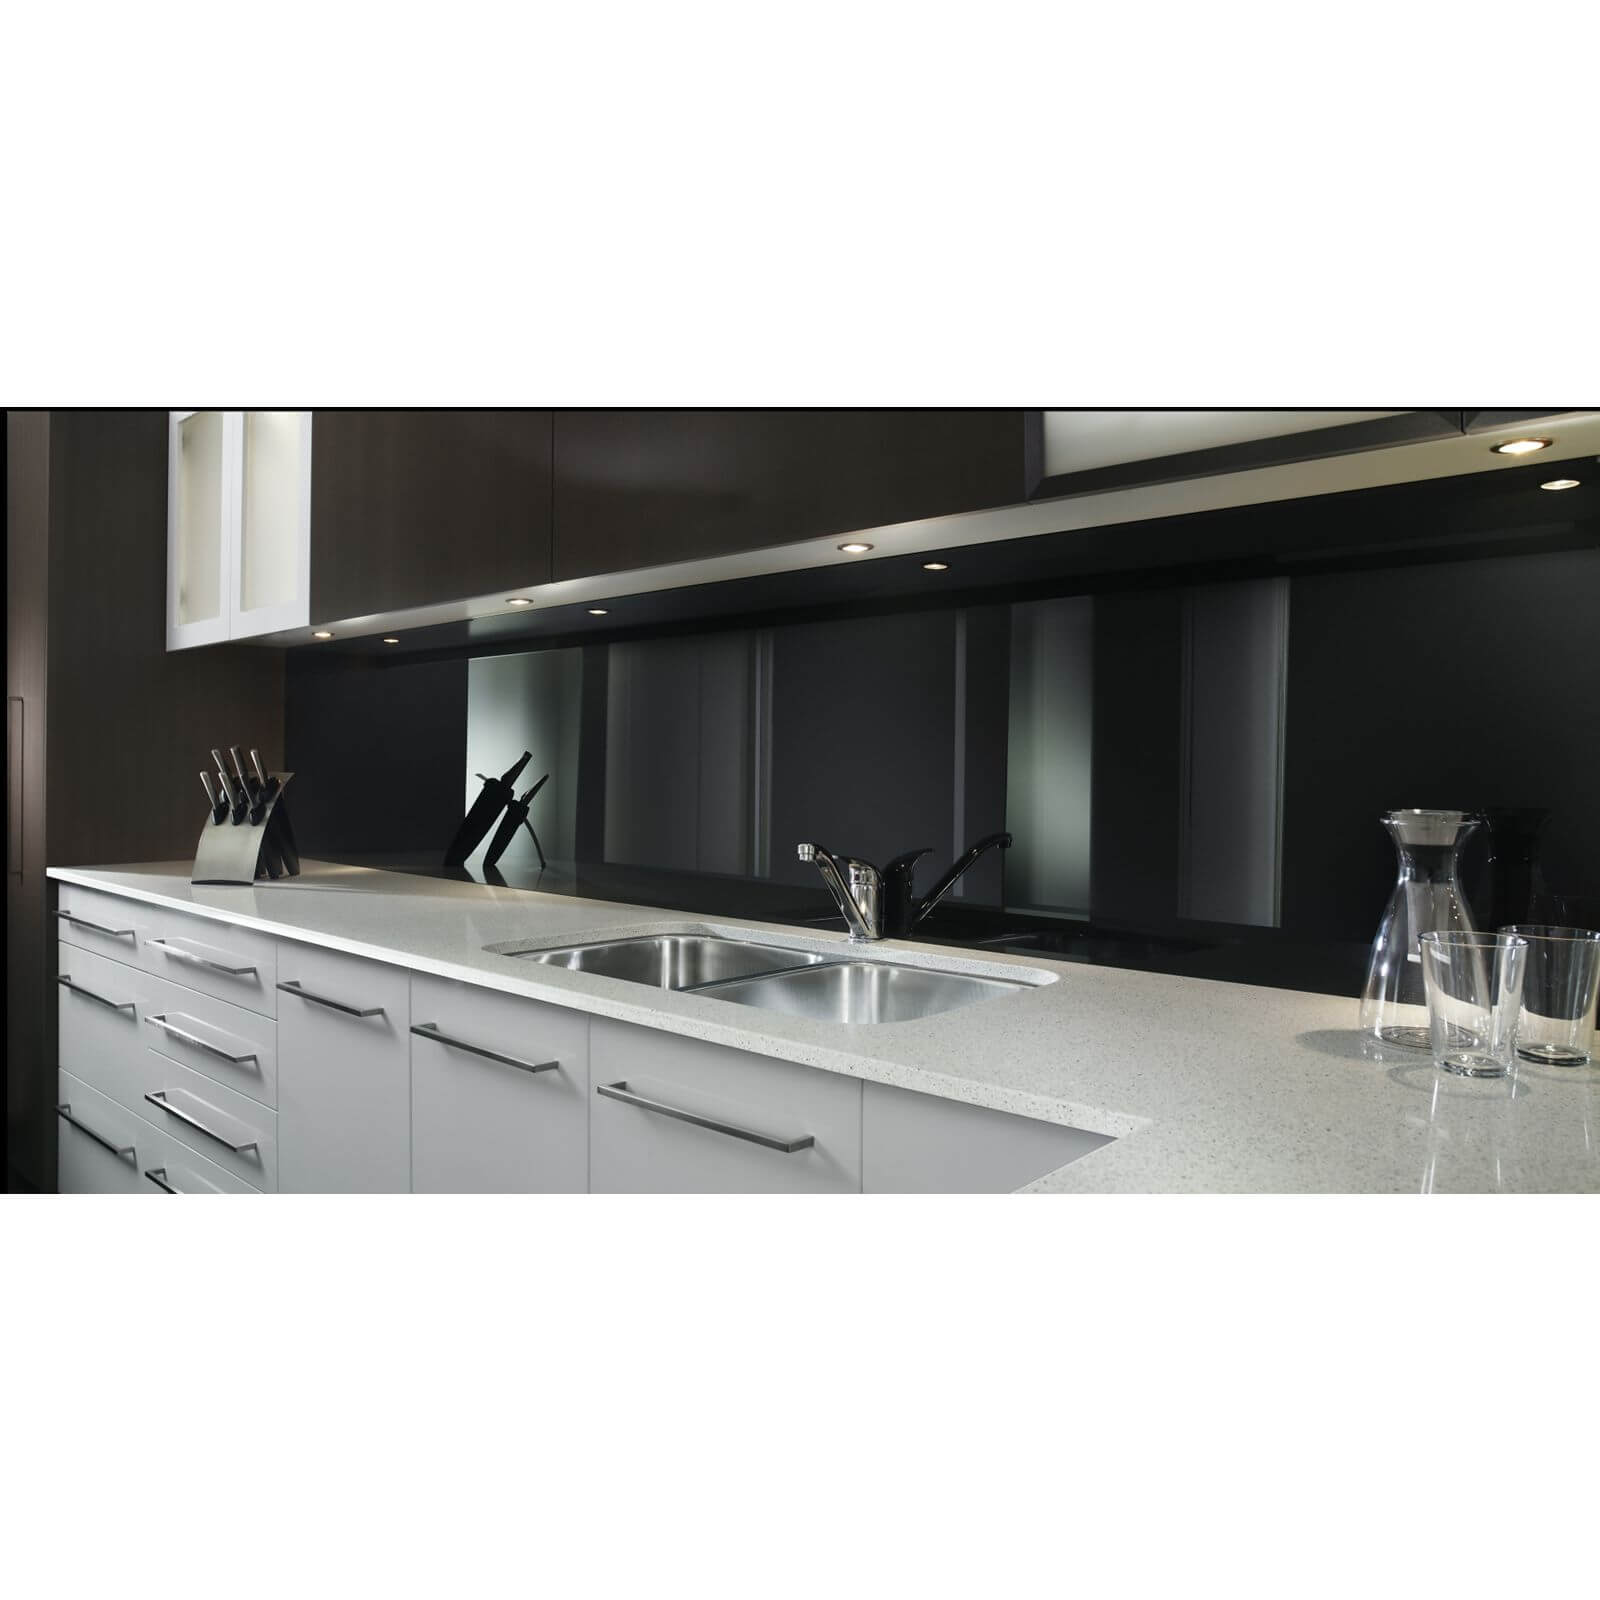 Zenolite Acrylic Kitchen Splashback Panel - 2440 x 605 x 4mm - Black